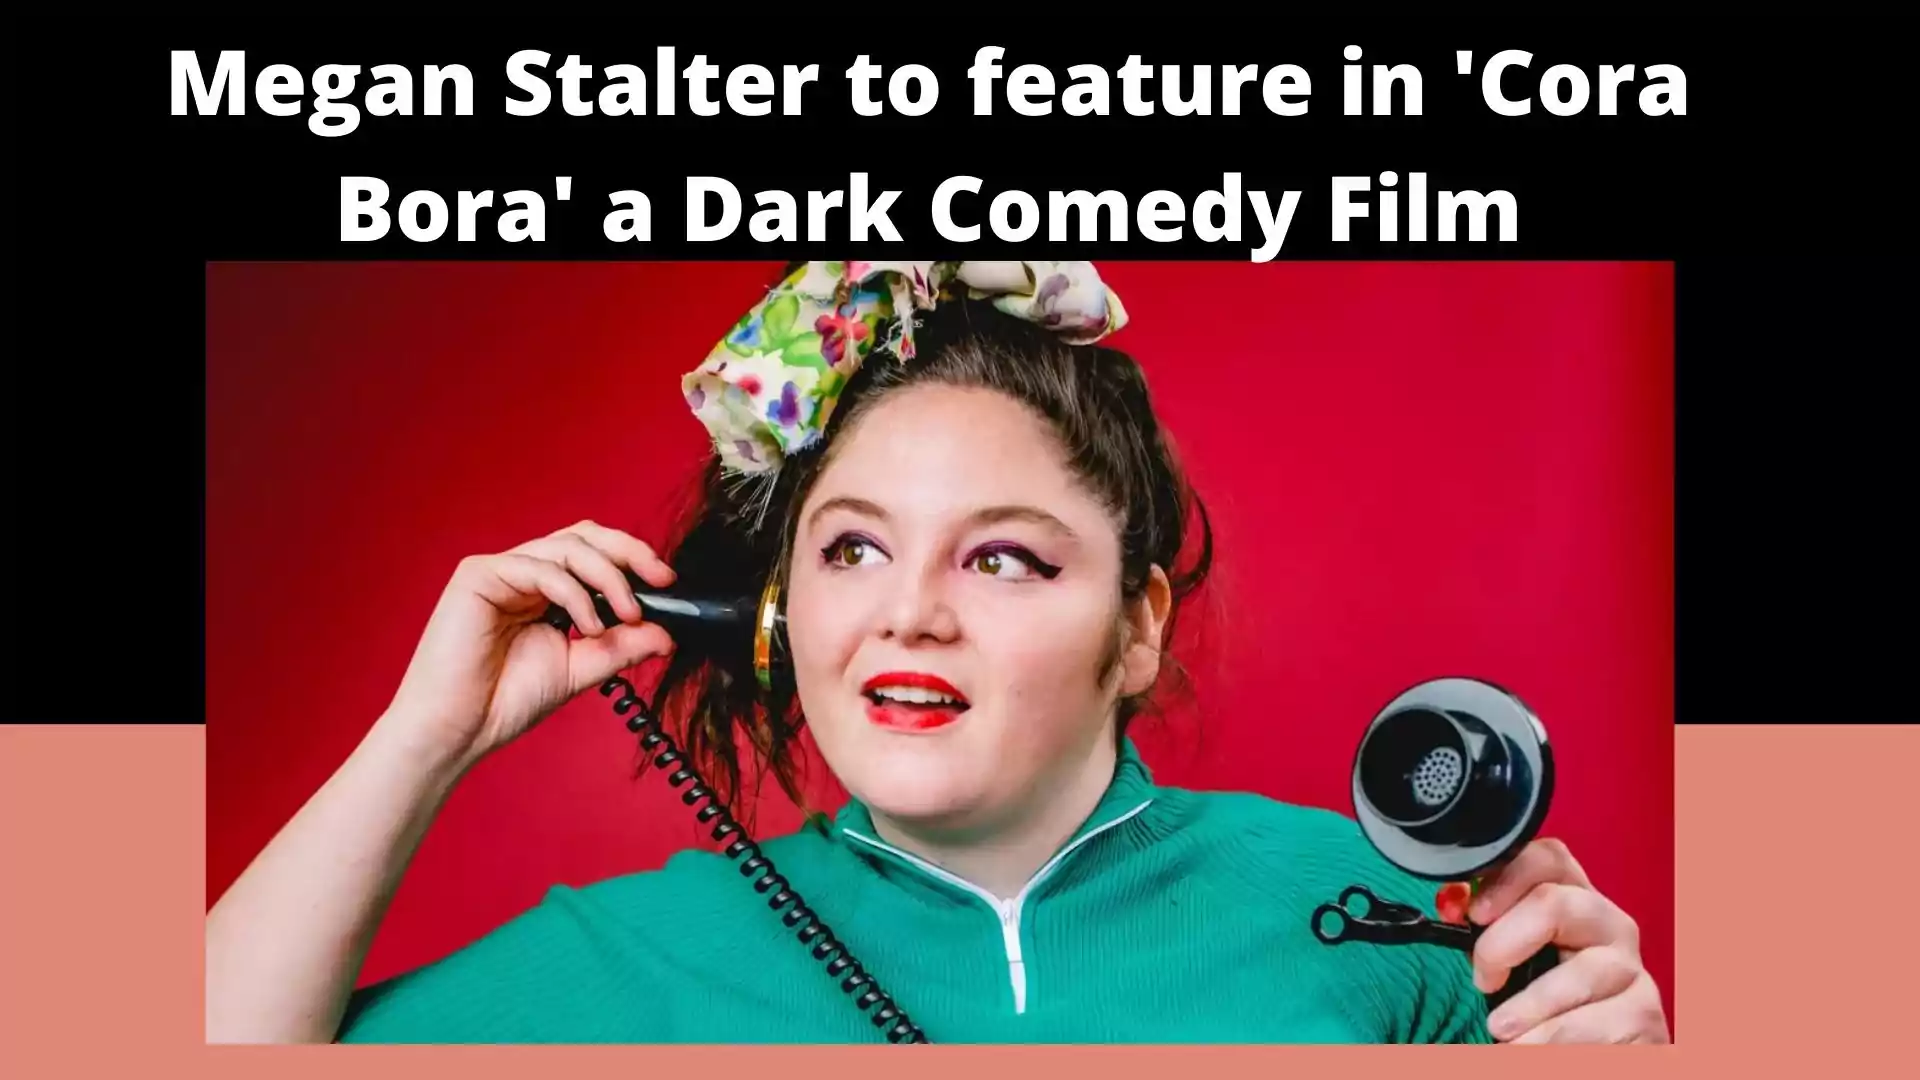 Megan Stalter to feature in 'Cora Bora' a Dark Comedy Film